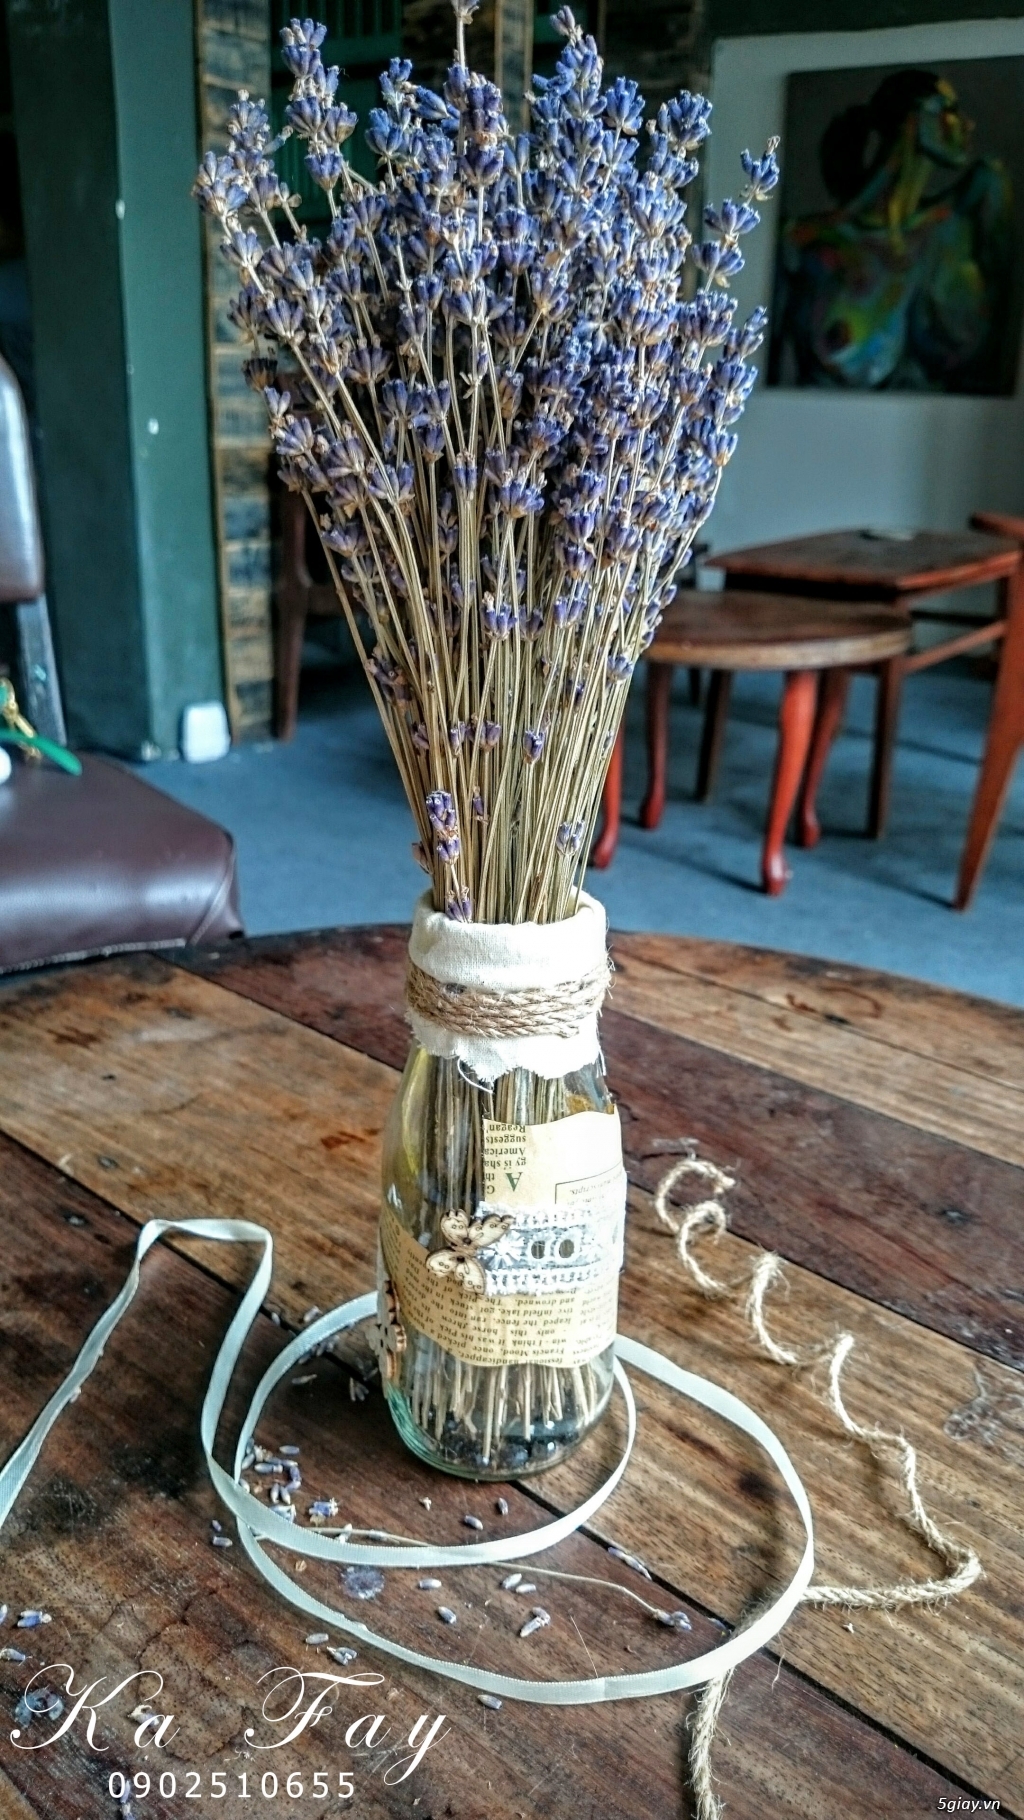 Hoa khô Lavender nhập khẩu từ pháp vs phụ kiện handmade - 11